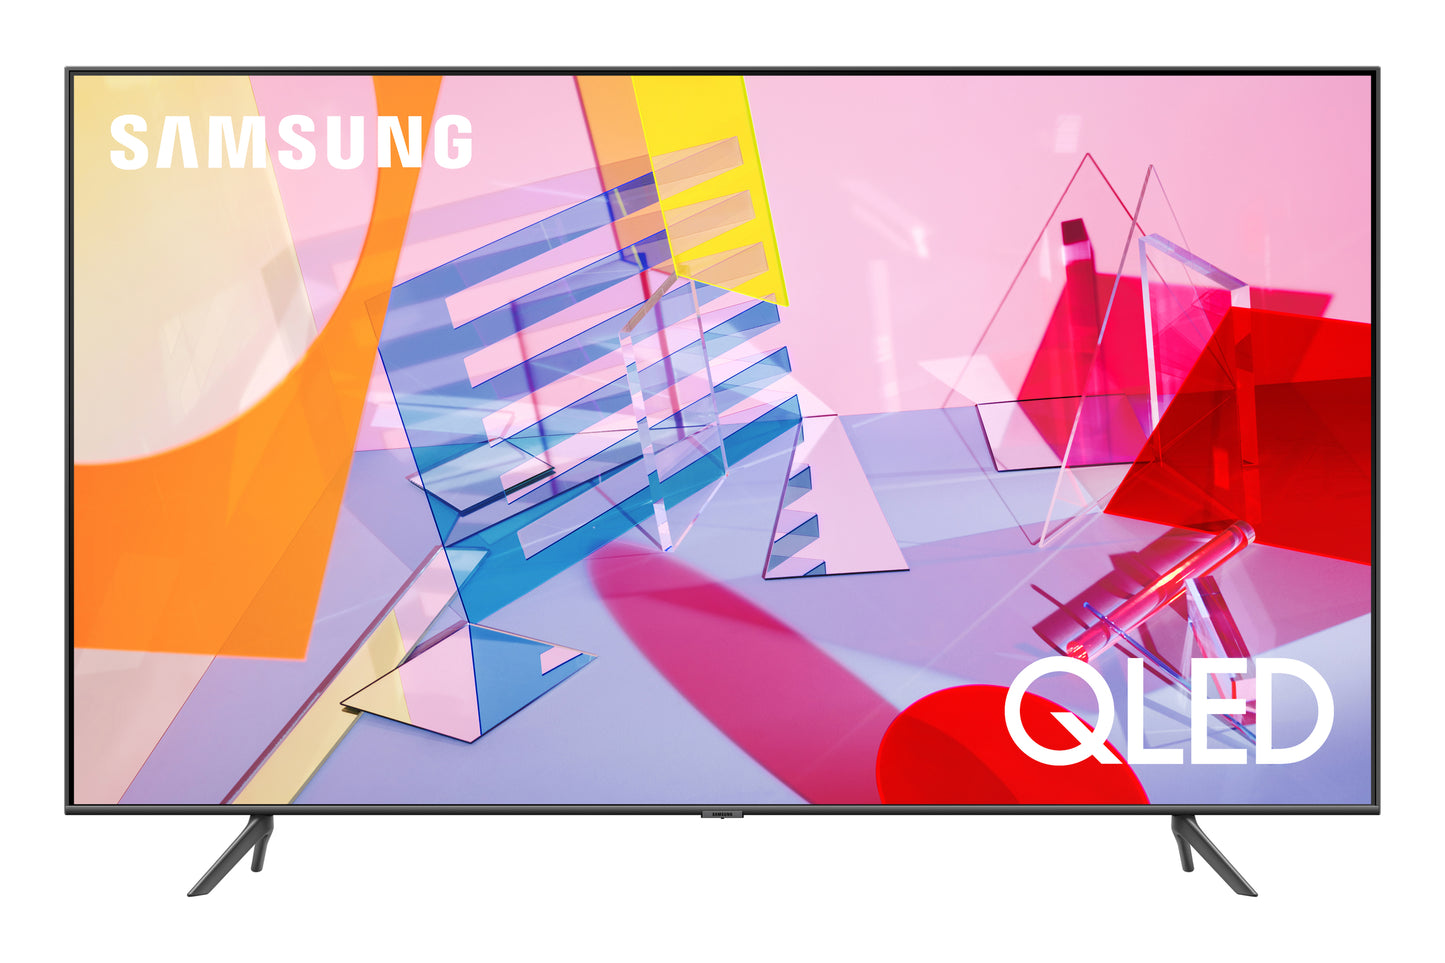 Samsung 65-in Q60T QLED 4K UHD HDR Smart TV QN65Q60TAFXZA (2020)